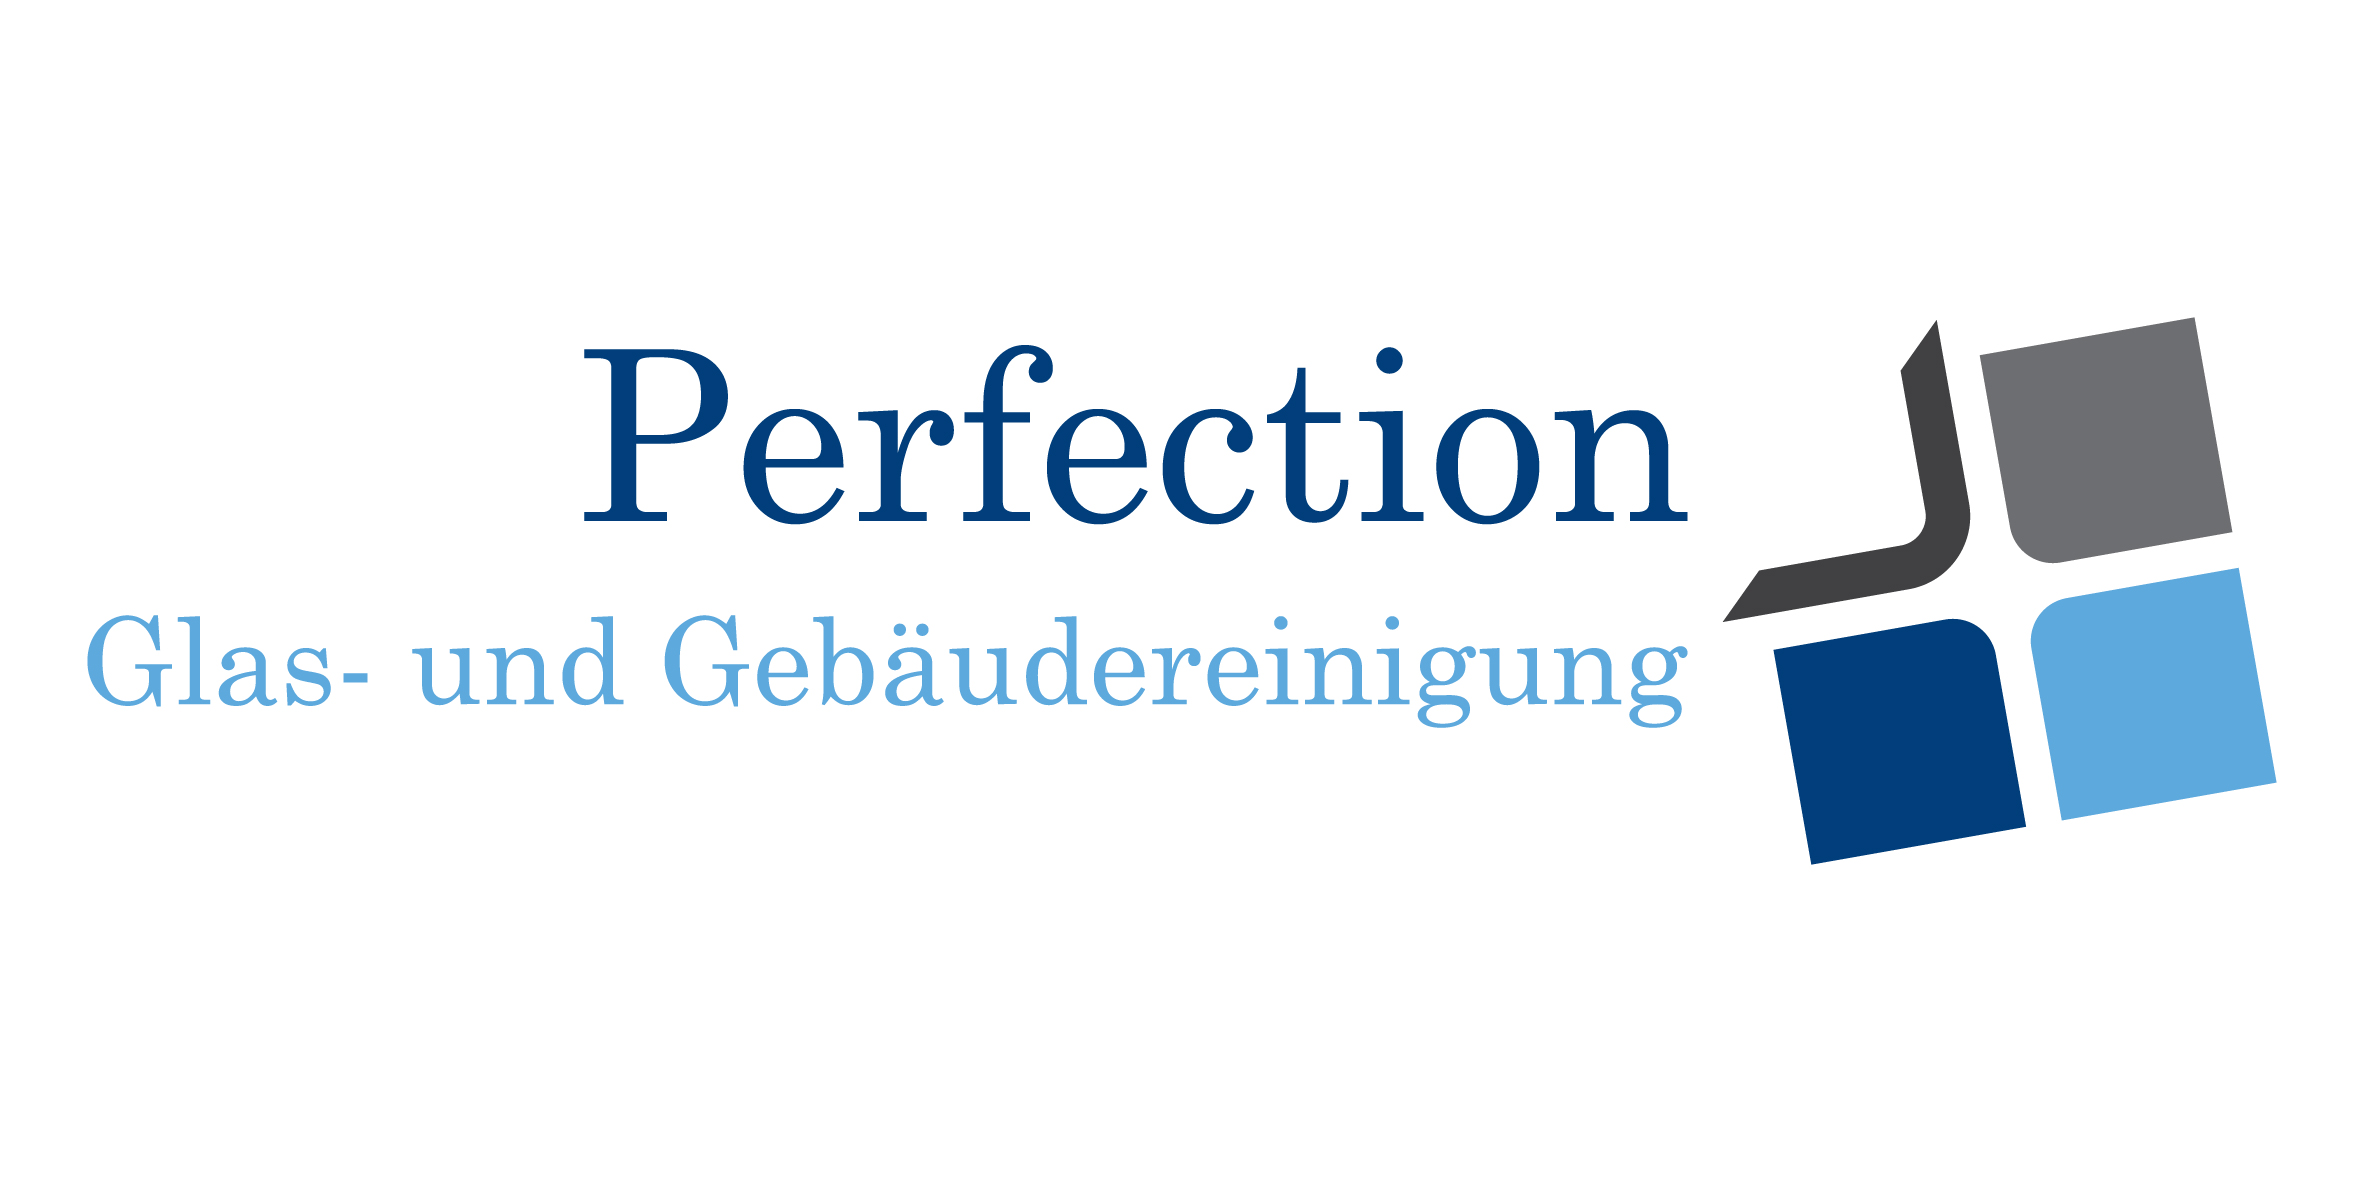 Bild 1 Perfection UG (haftungsbeschränkt) in Münster